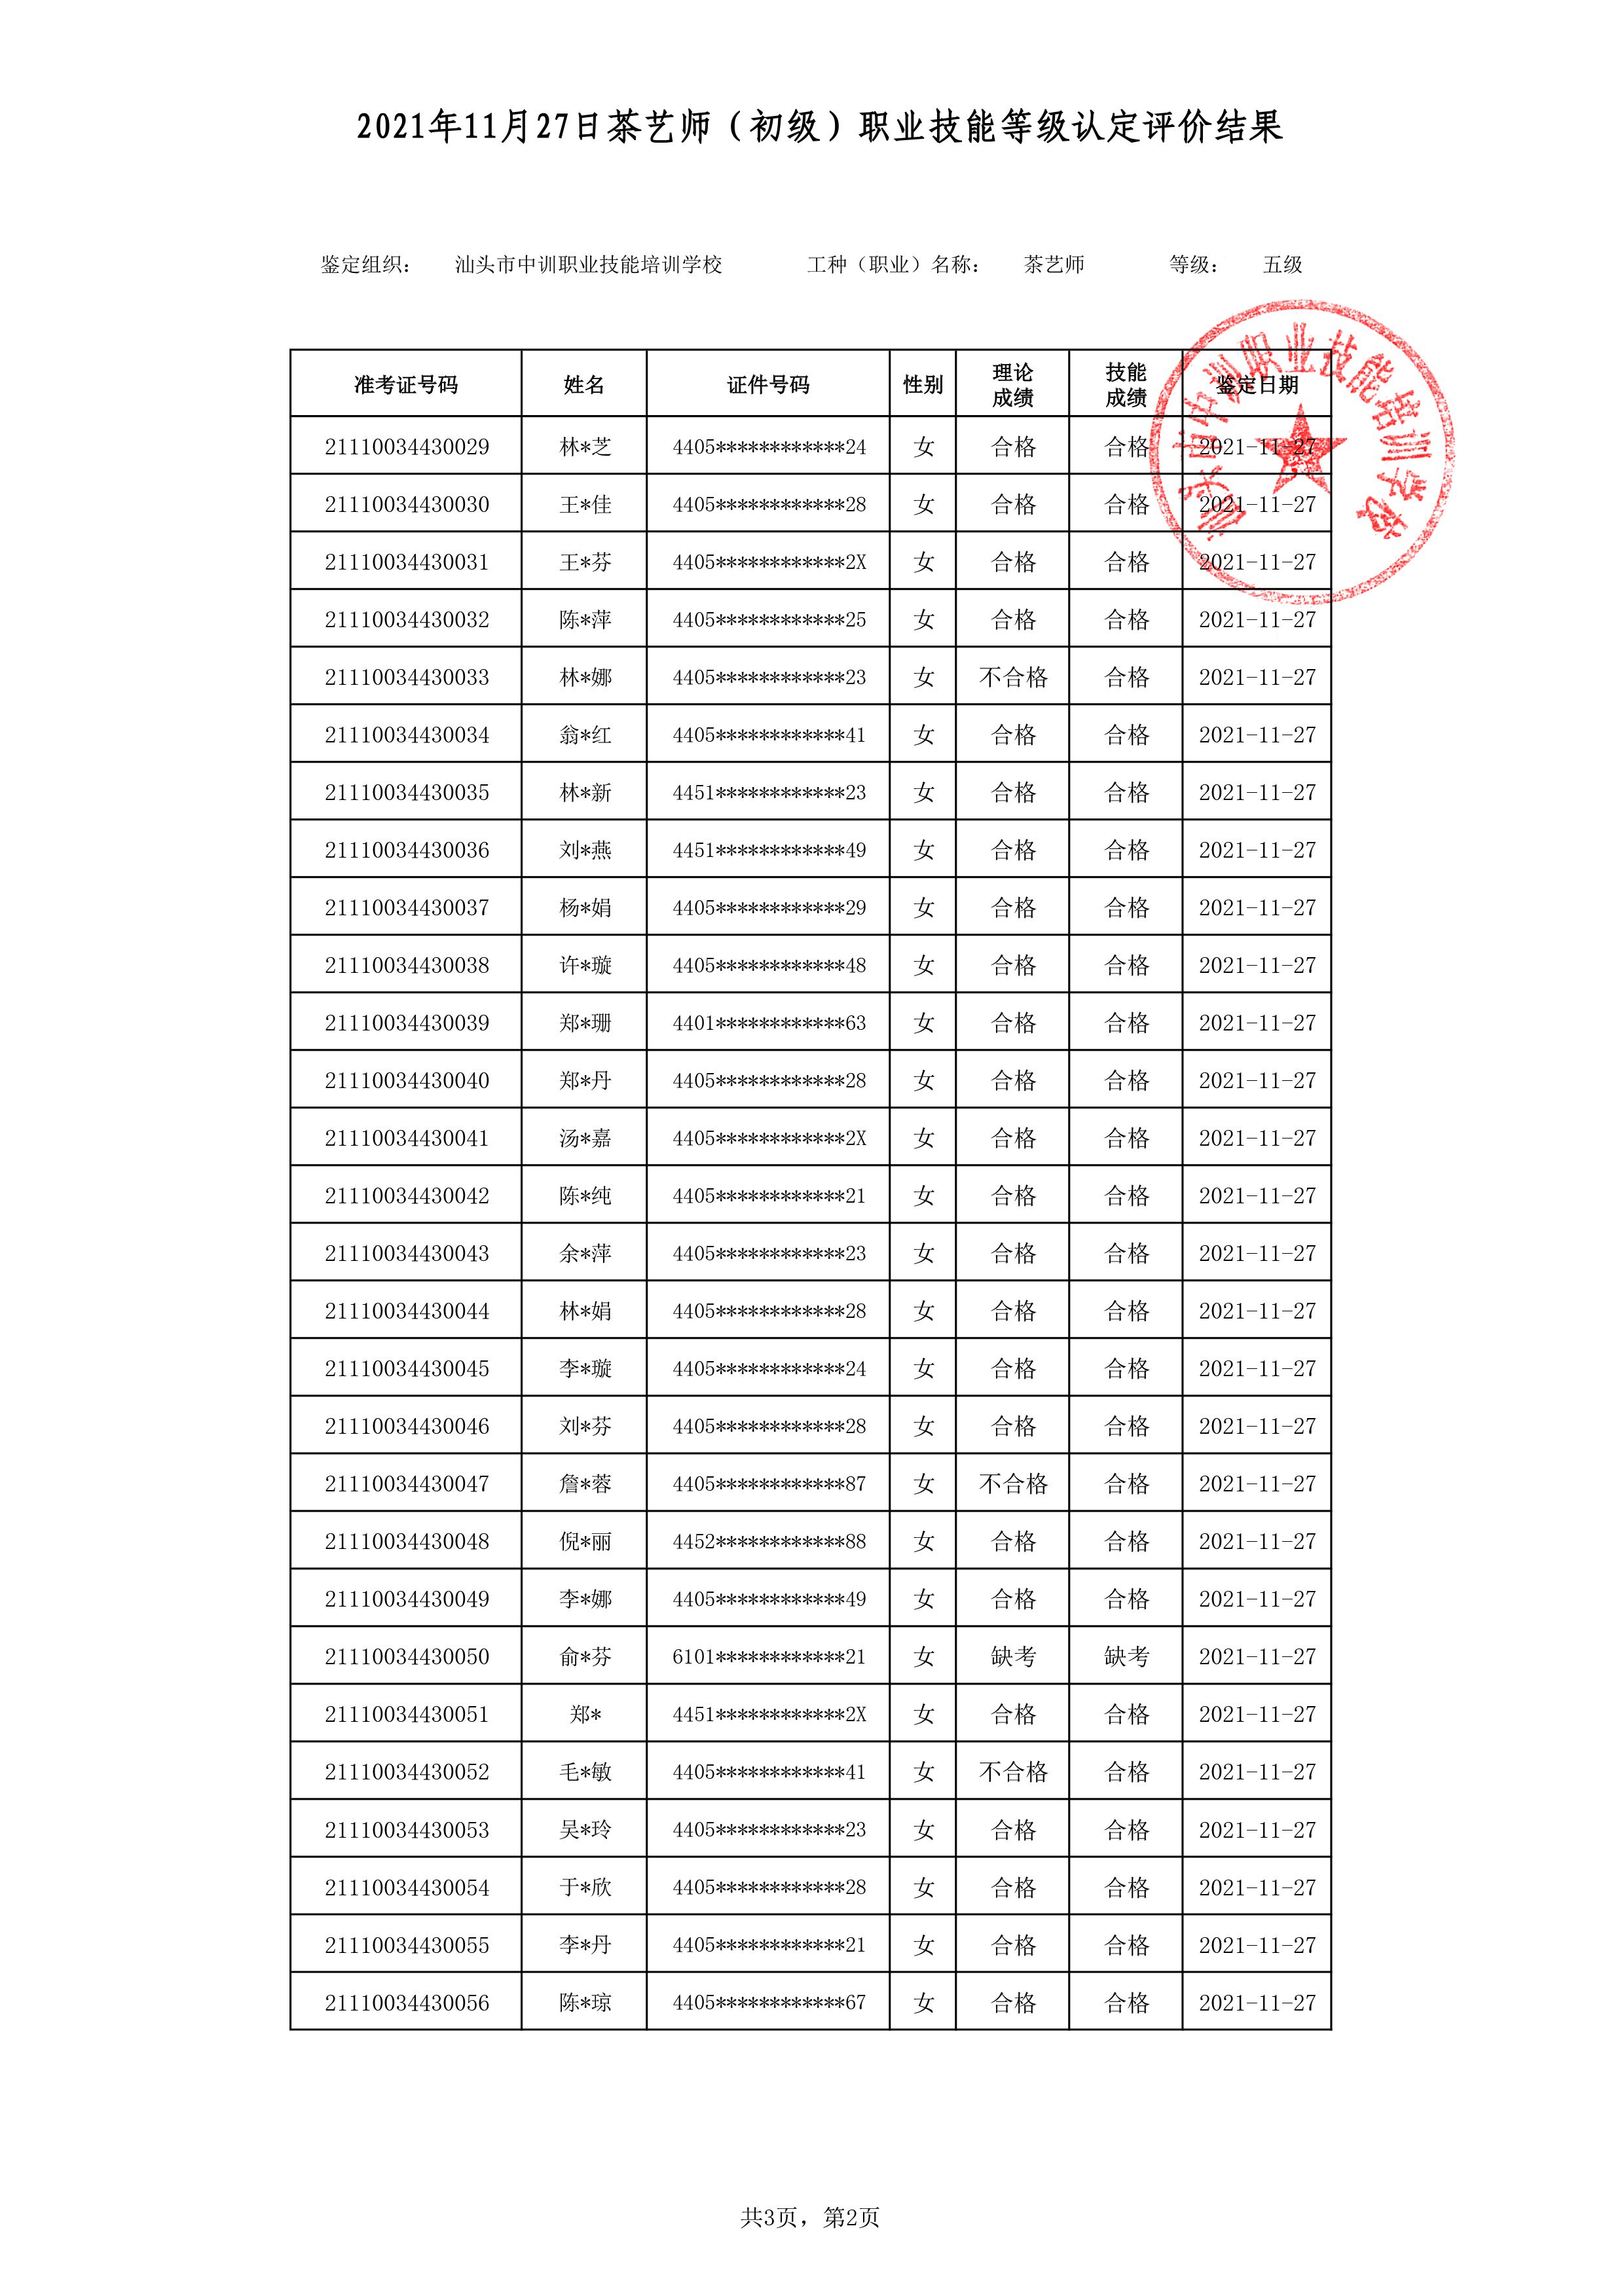 21-11-27五级茶艺师考试鉴定名册表-2 副本.jpg